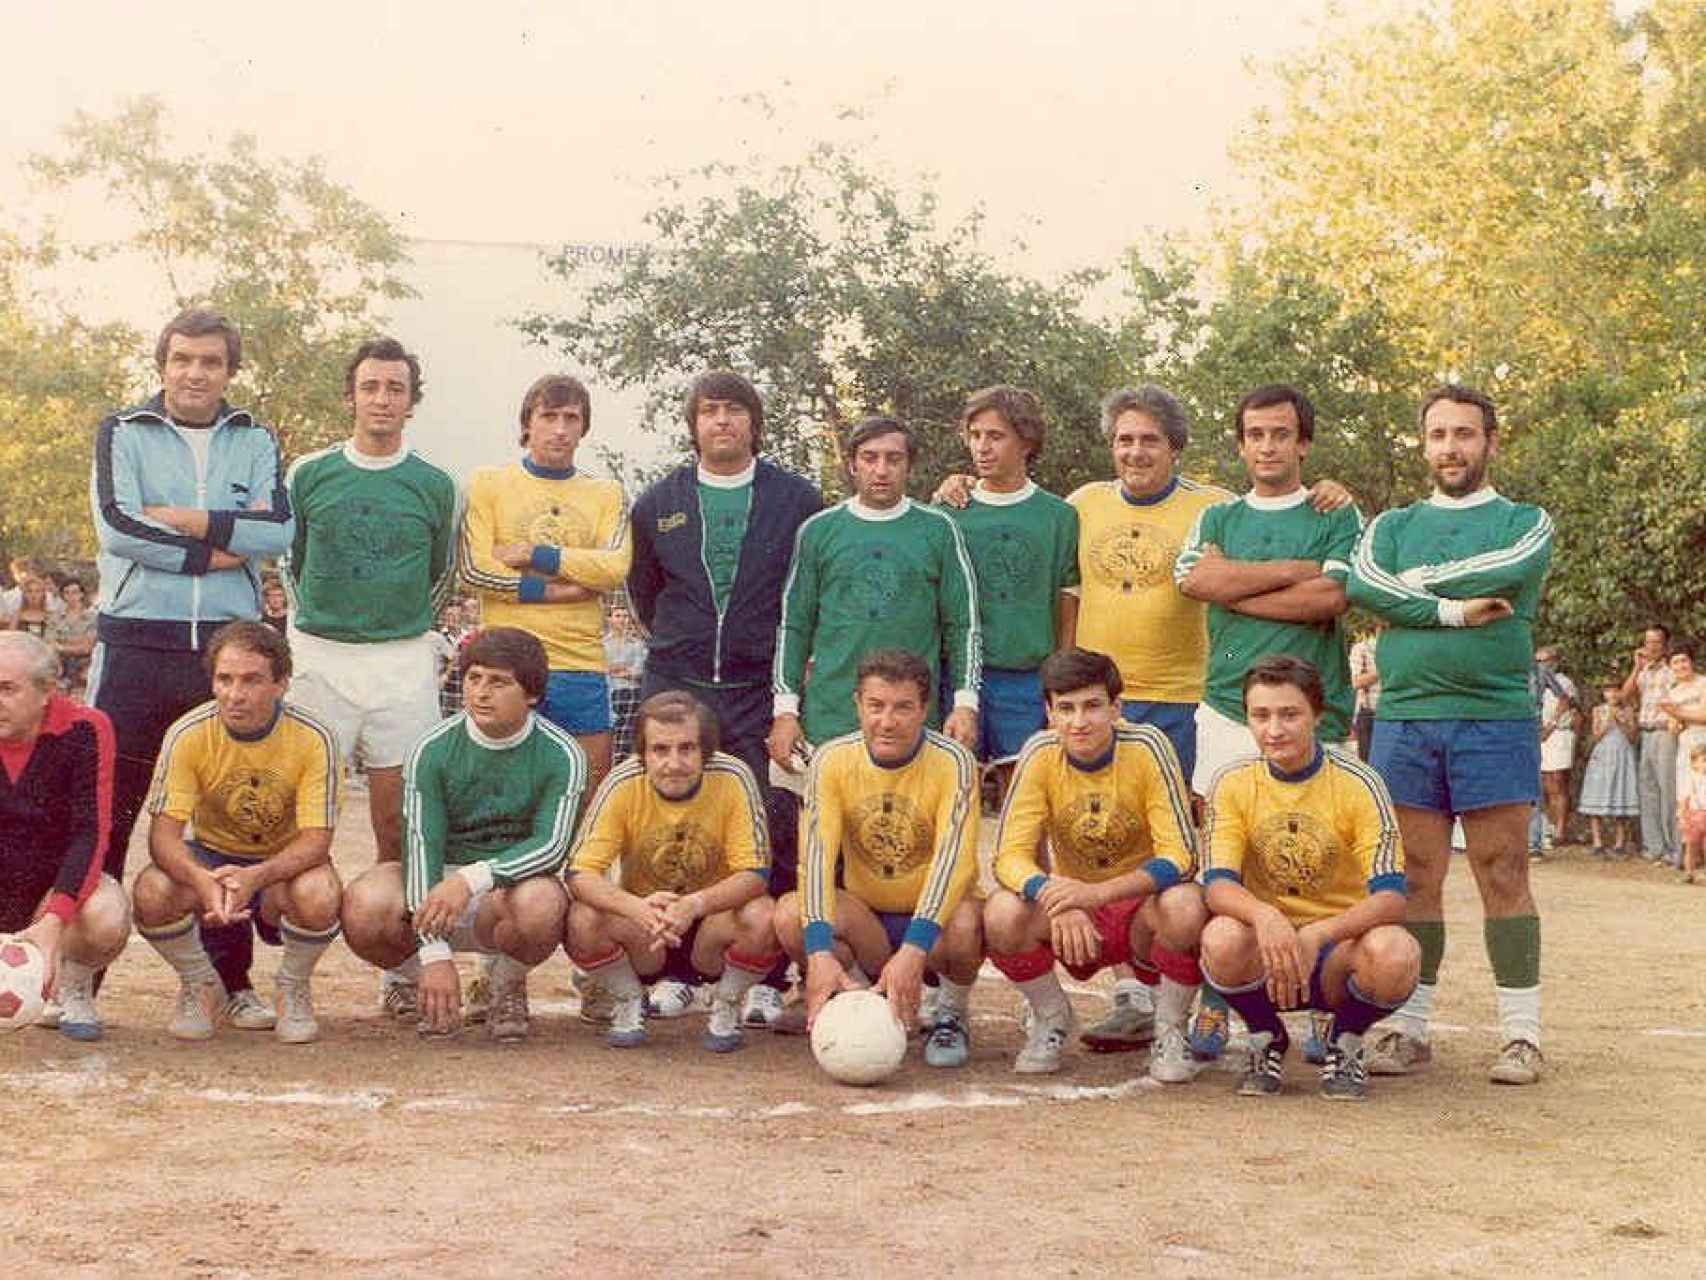 García jugó un partido de fútbol en Torrelodones varios años antes del mitin